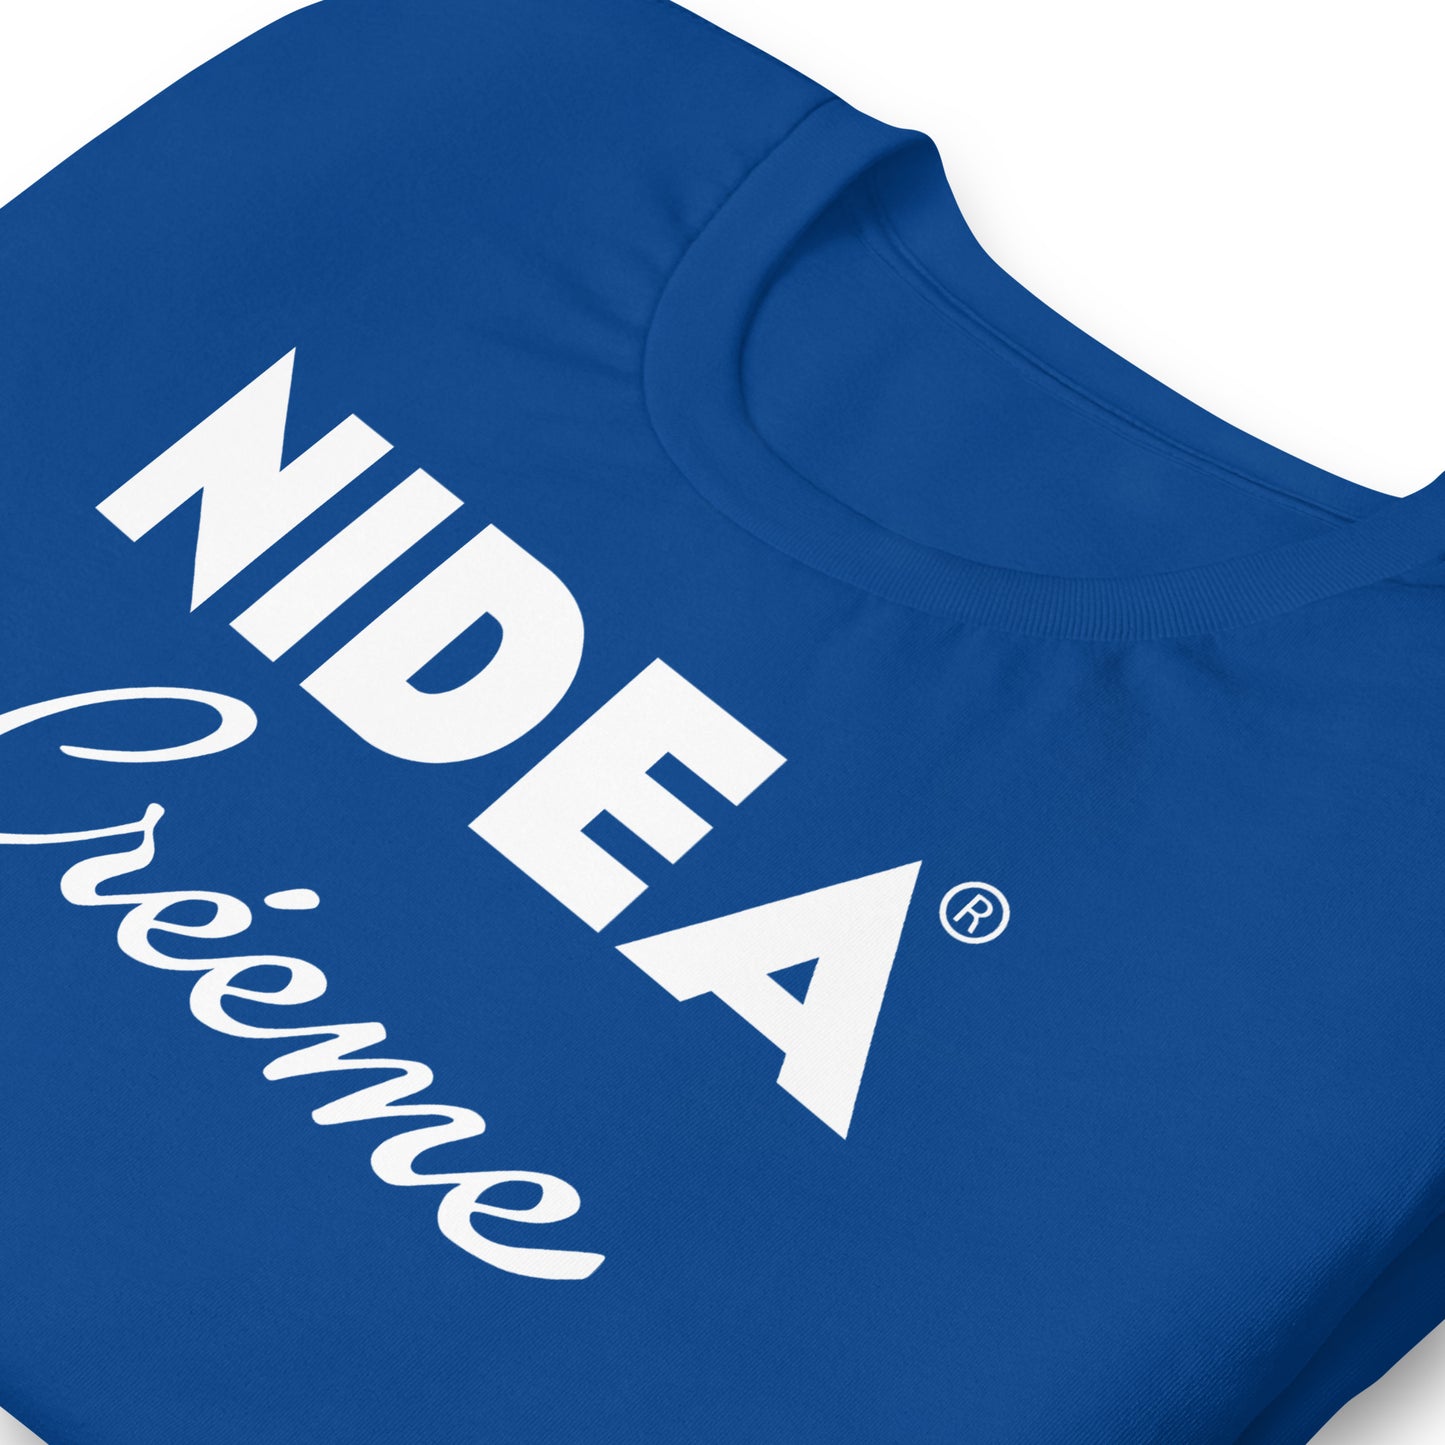 Camiseta Nidea Créeme logo Nivea. Color Azul Royal. Detalle.